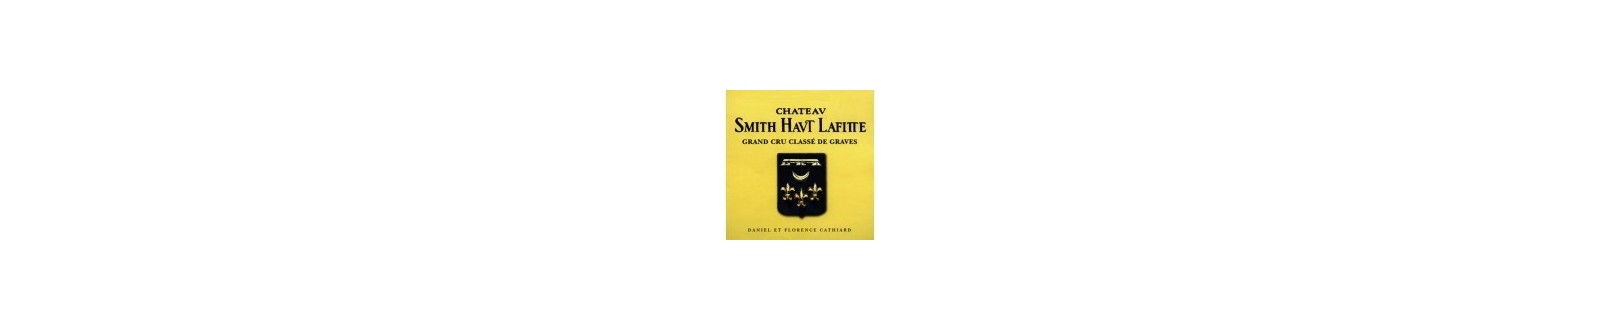 Vin(s) du Château Smith Ht. Lafitte